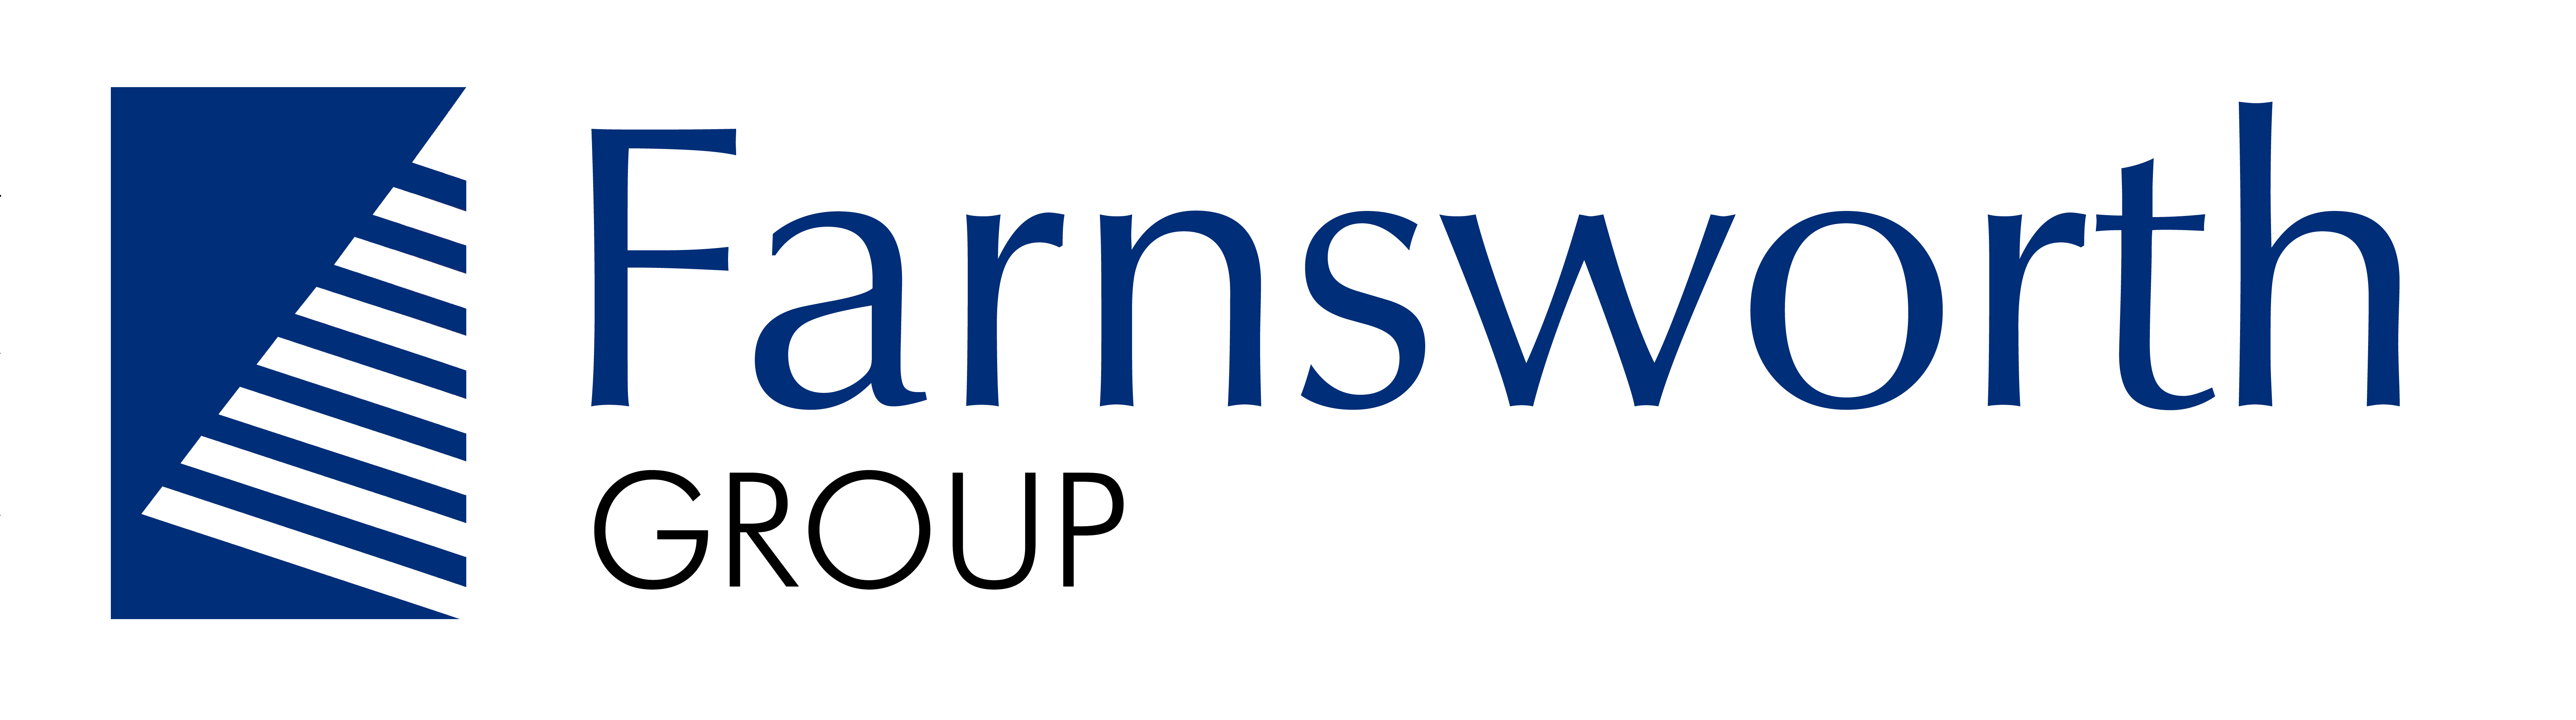 Farnsworth-Group-Logo-for-Sponsors